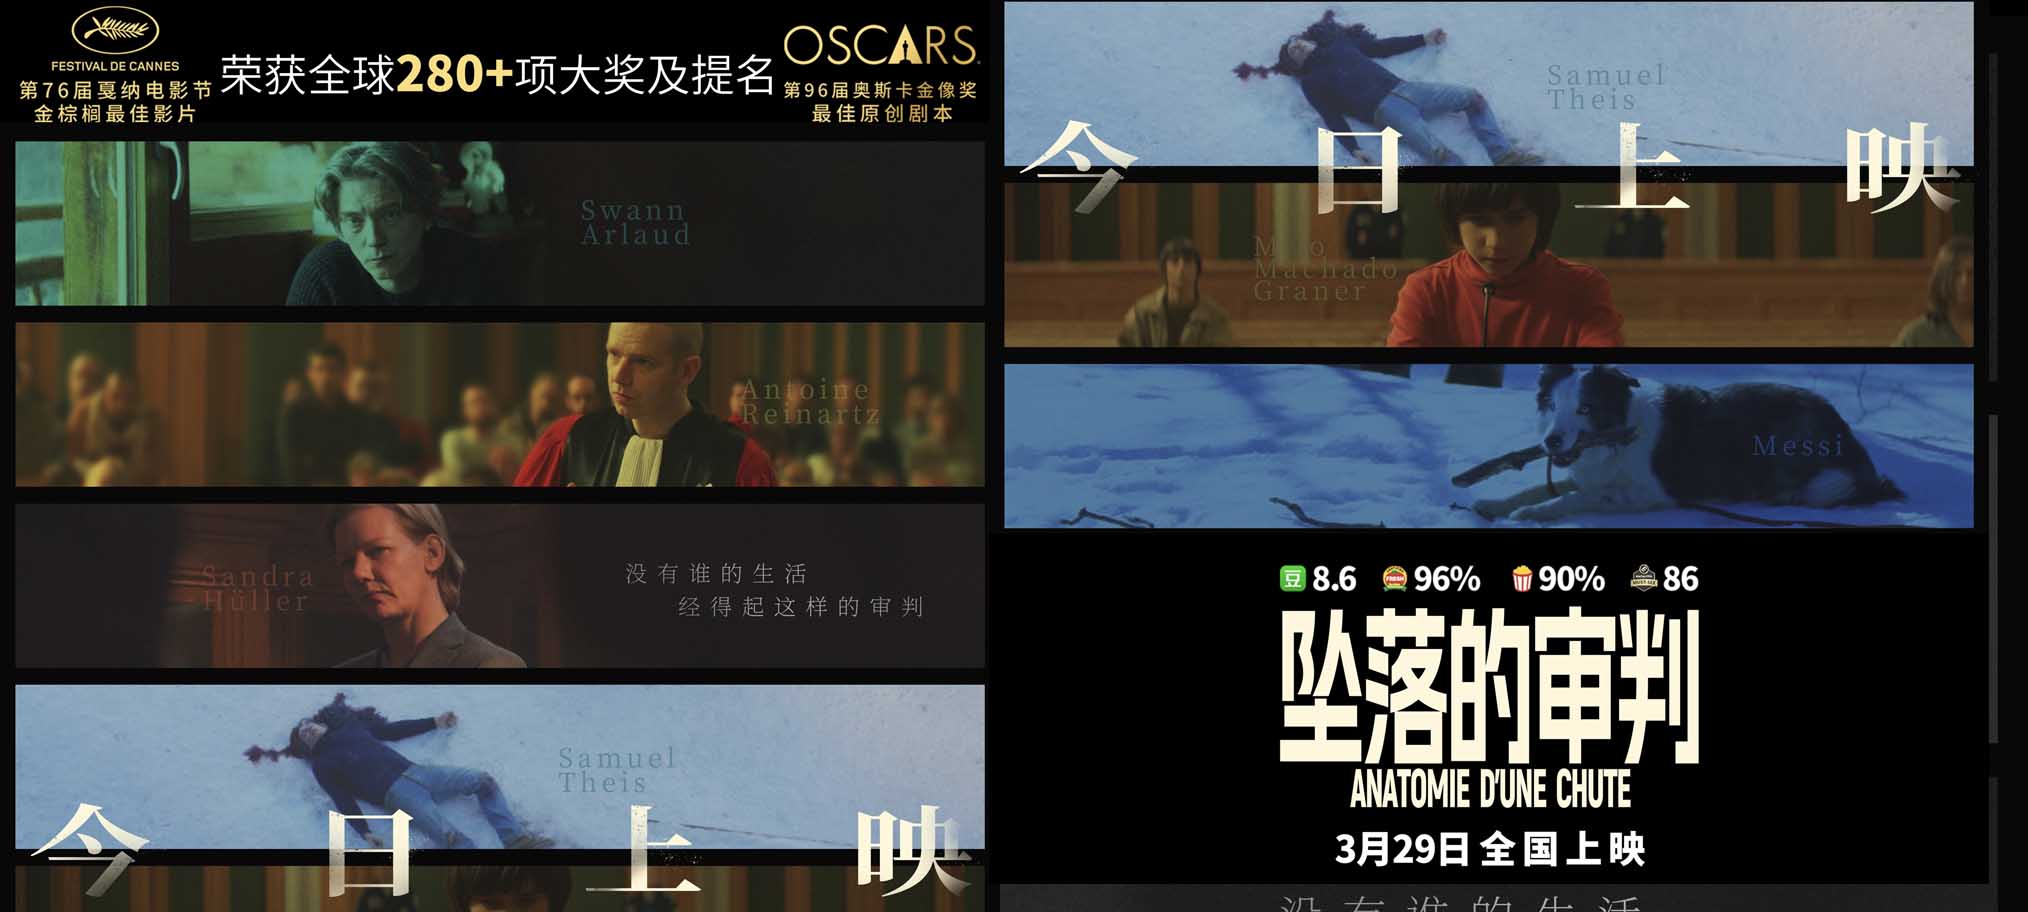 电影《坠落的审判》今日上映 影后桑德拉·惠勒全中文问好尽显诚